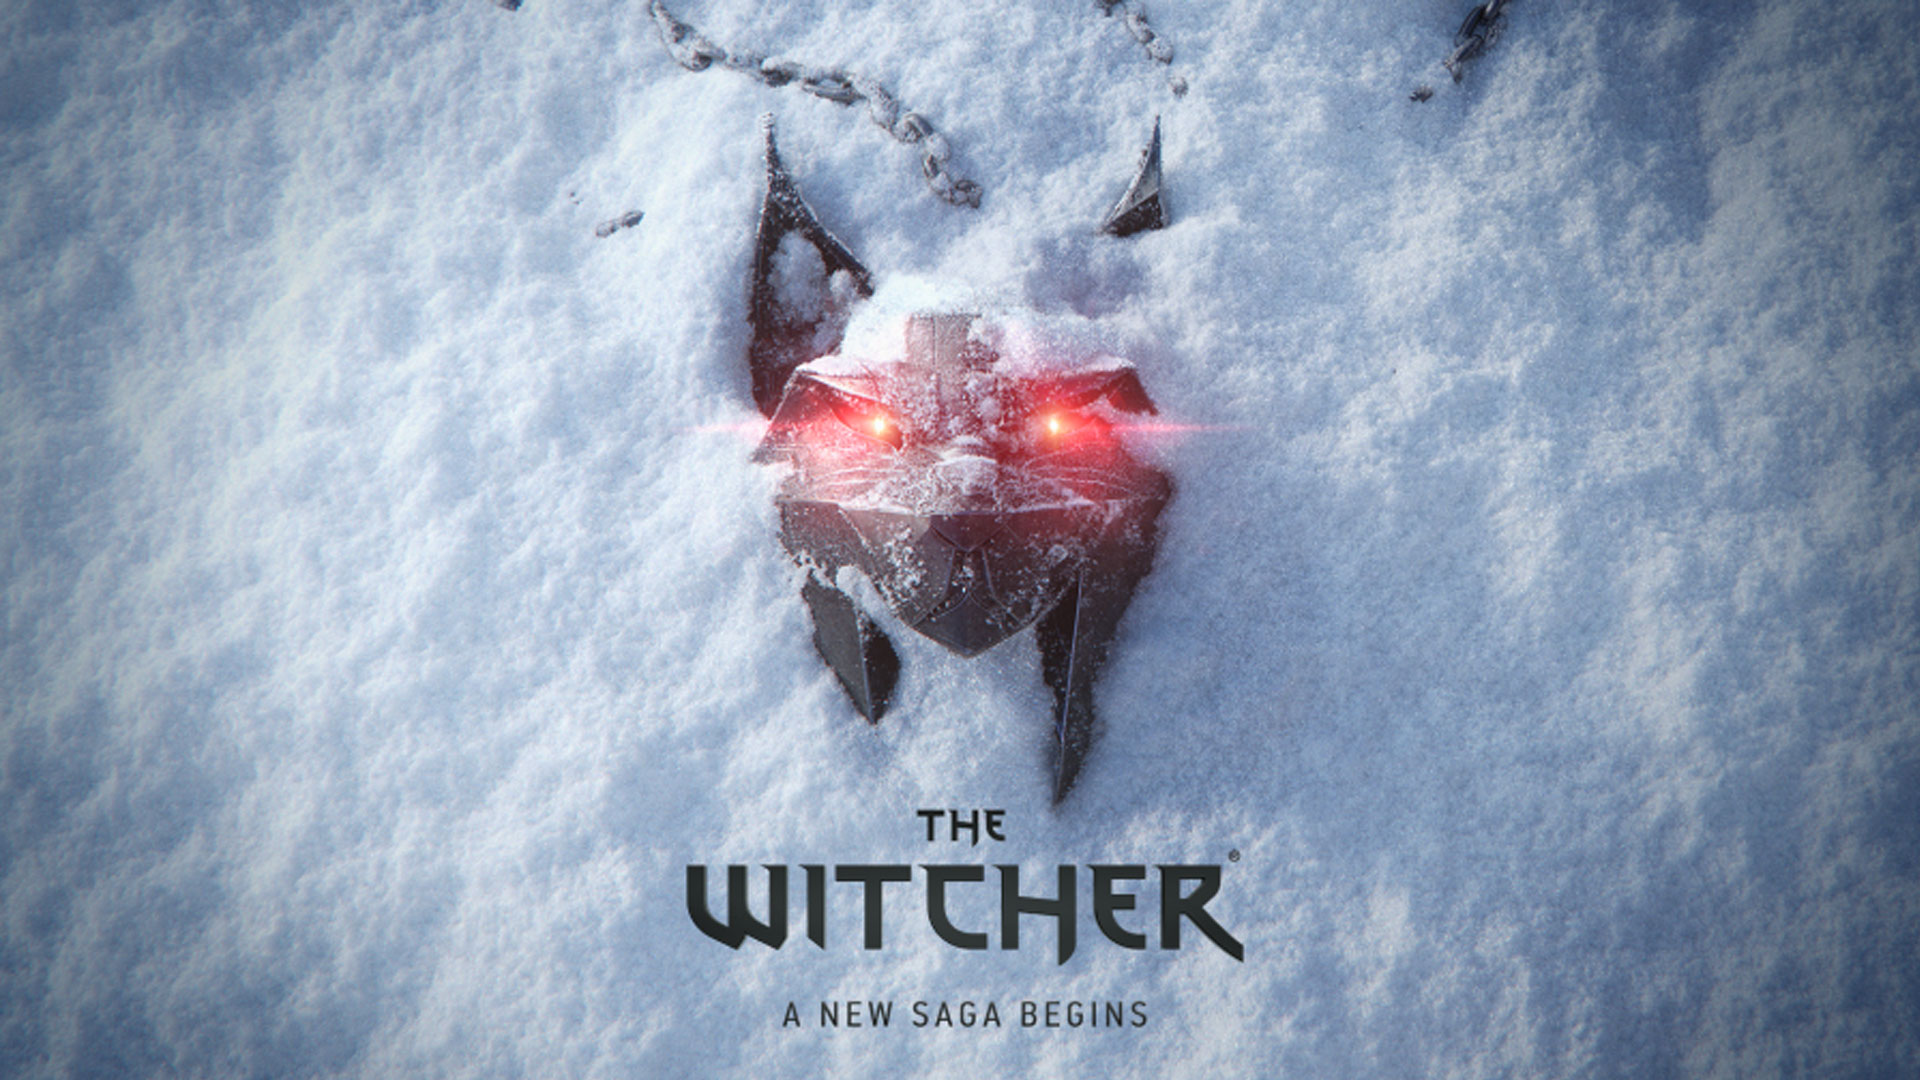 CD Projekt Red anuncia un nuevo juego de Witcher con nieve alrededor de un emblema de gato